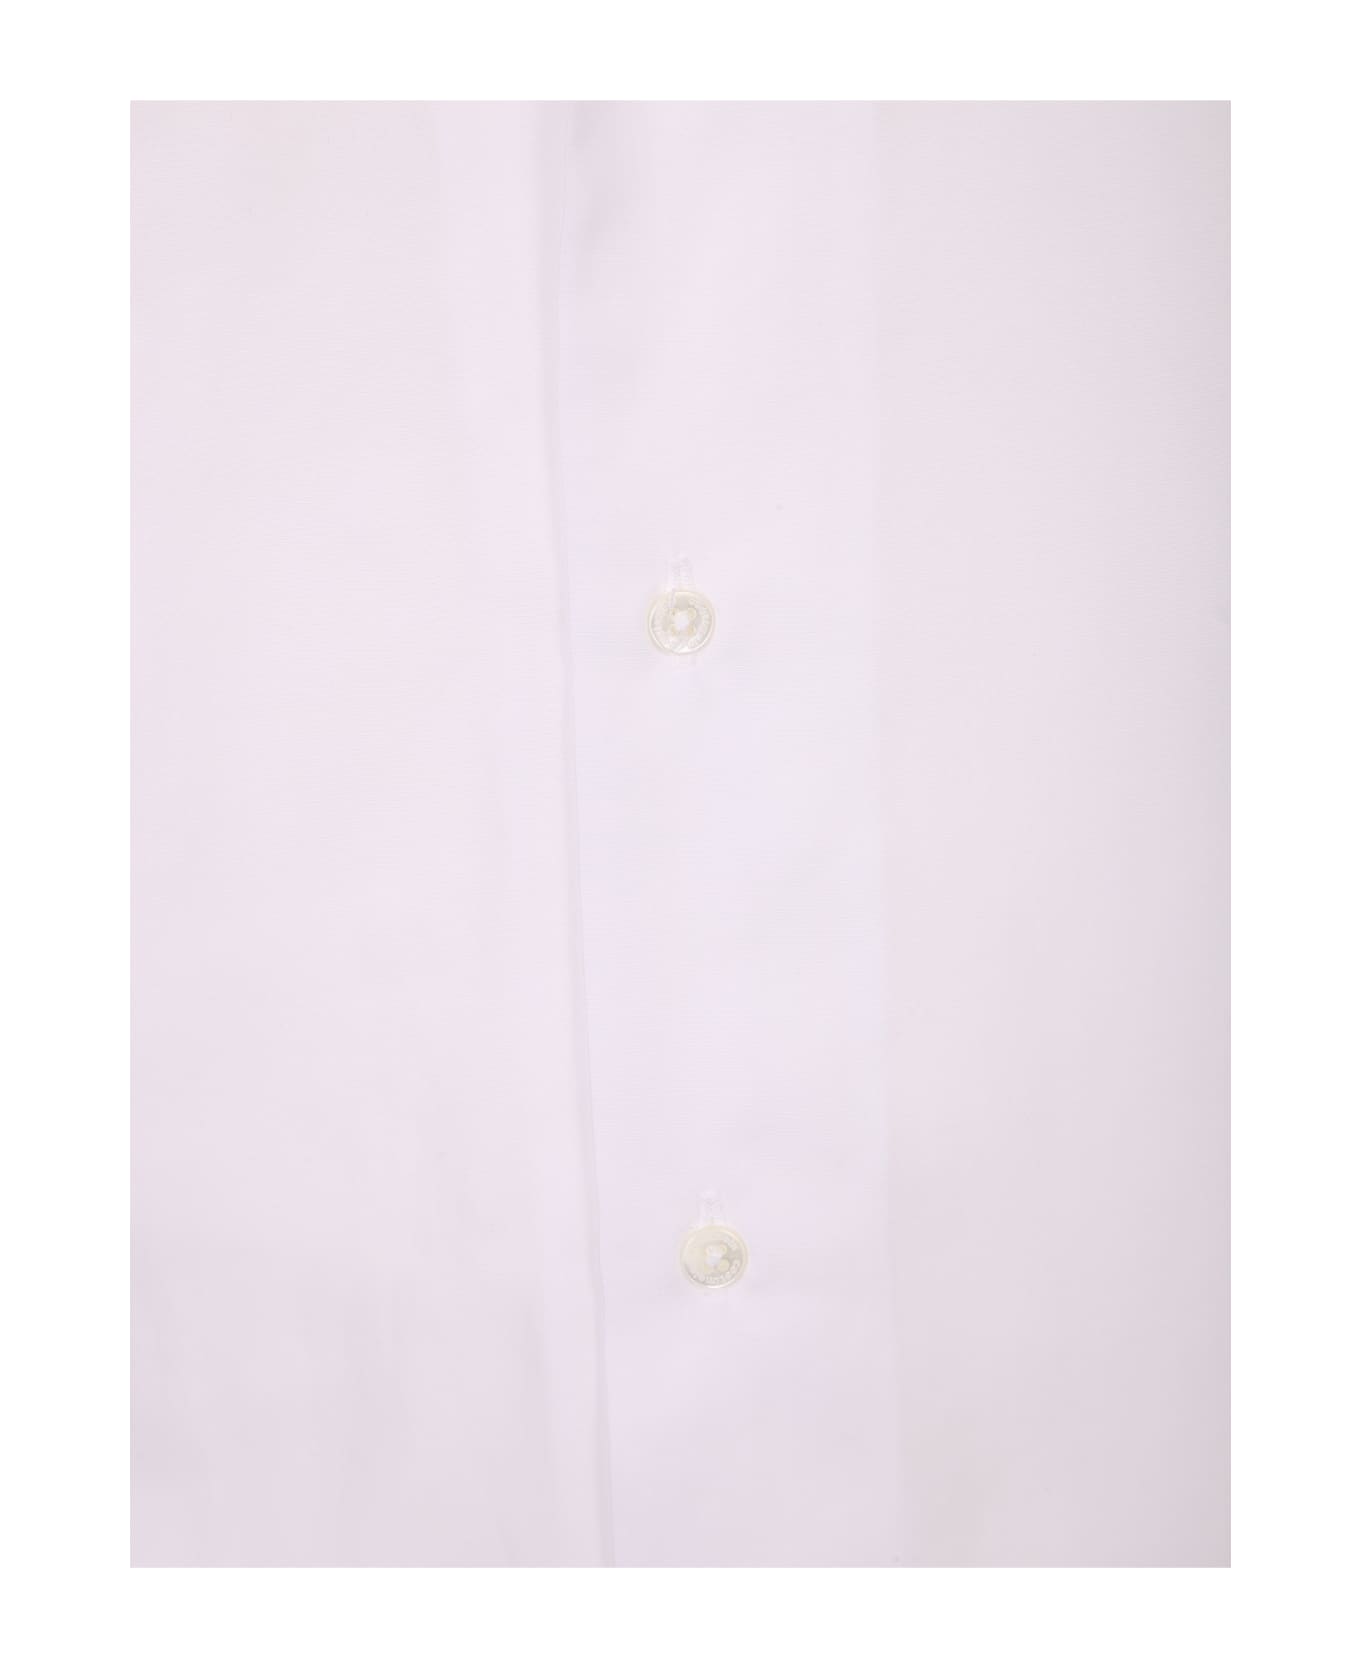 costumein Classic Shirt - White